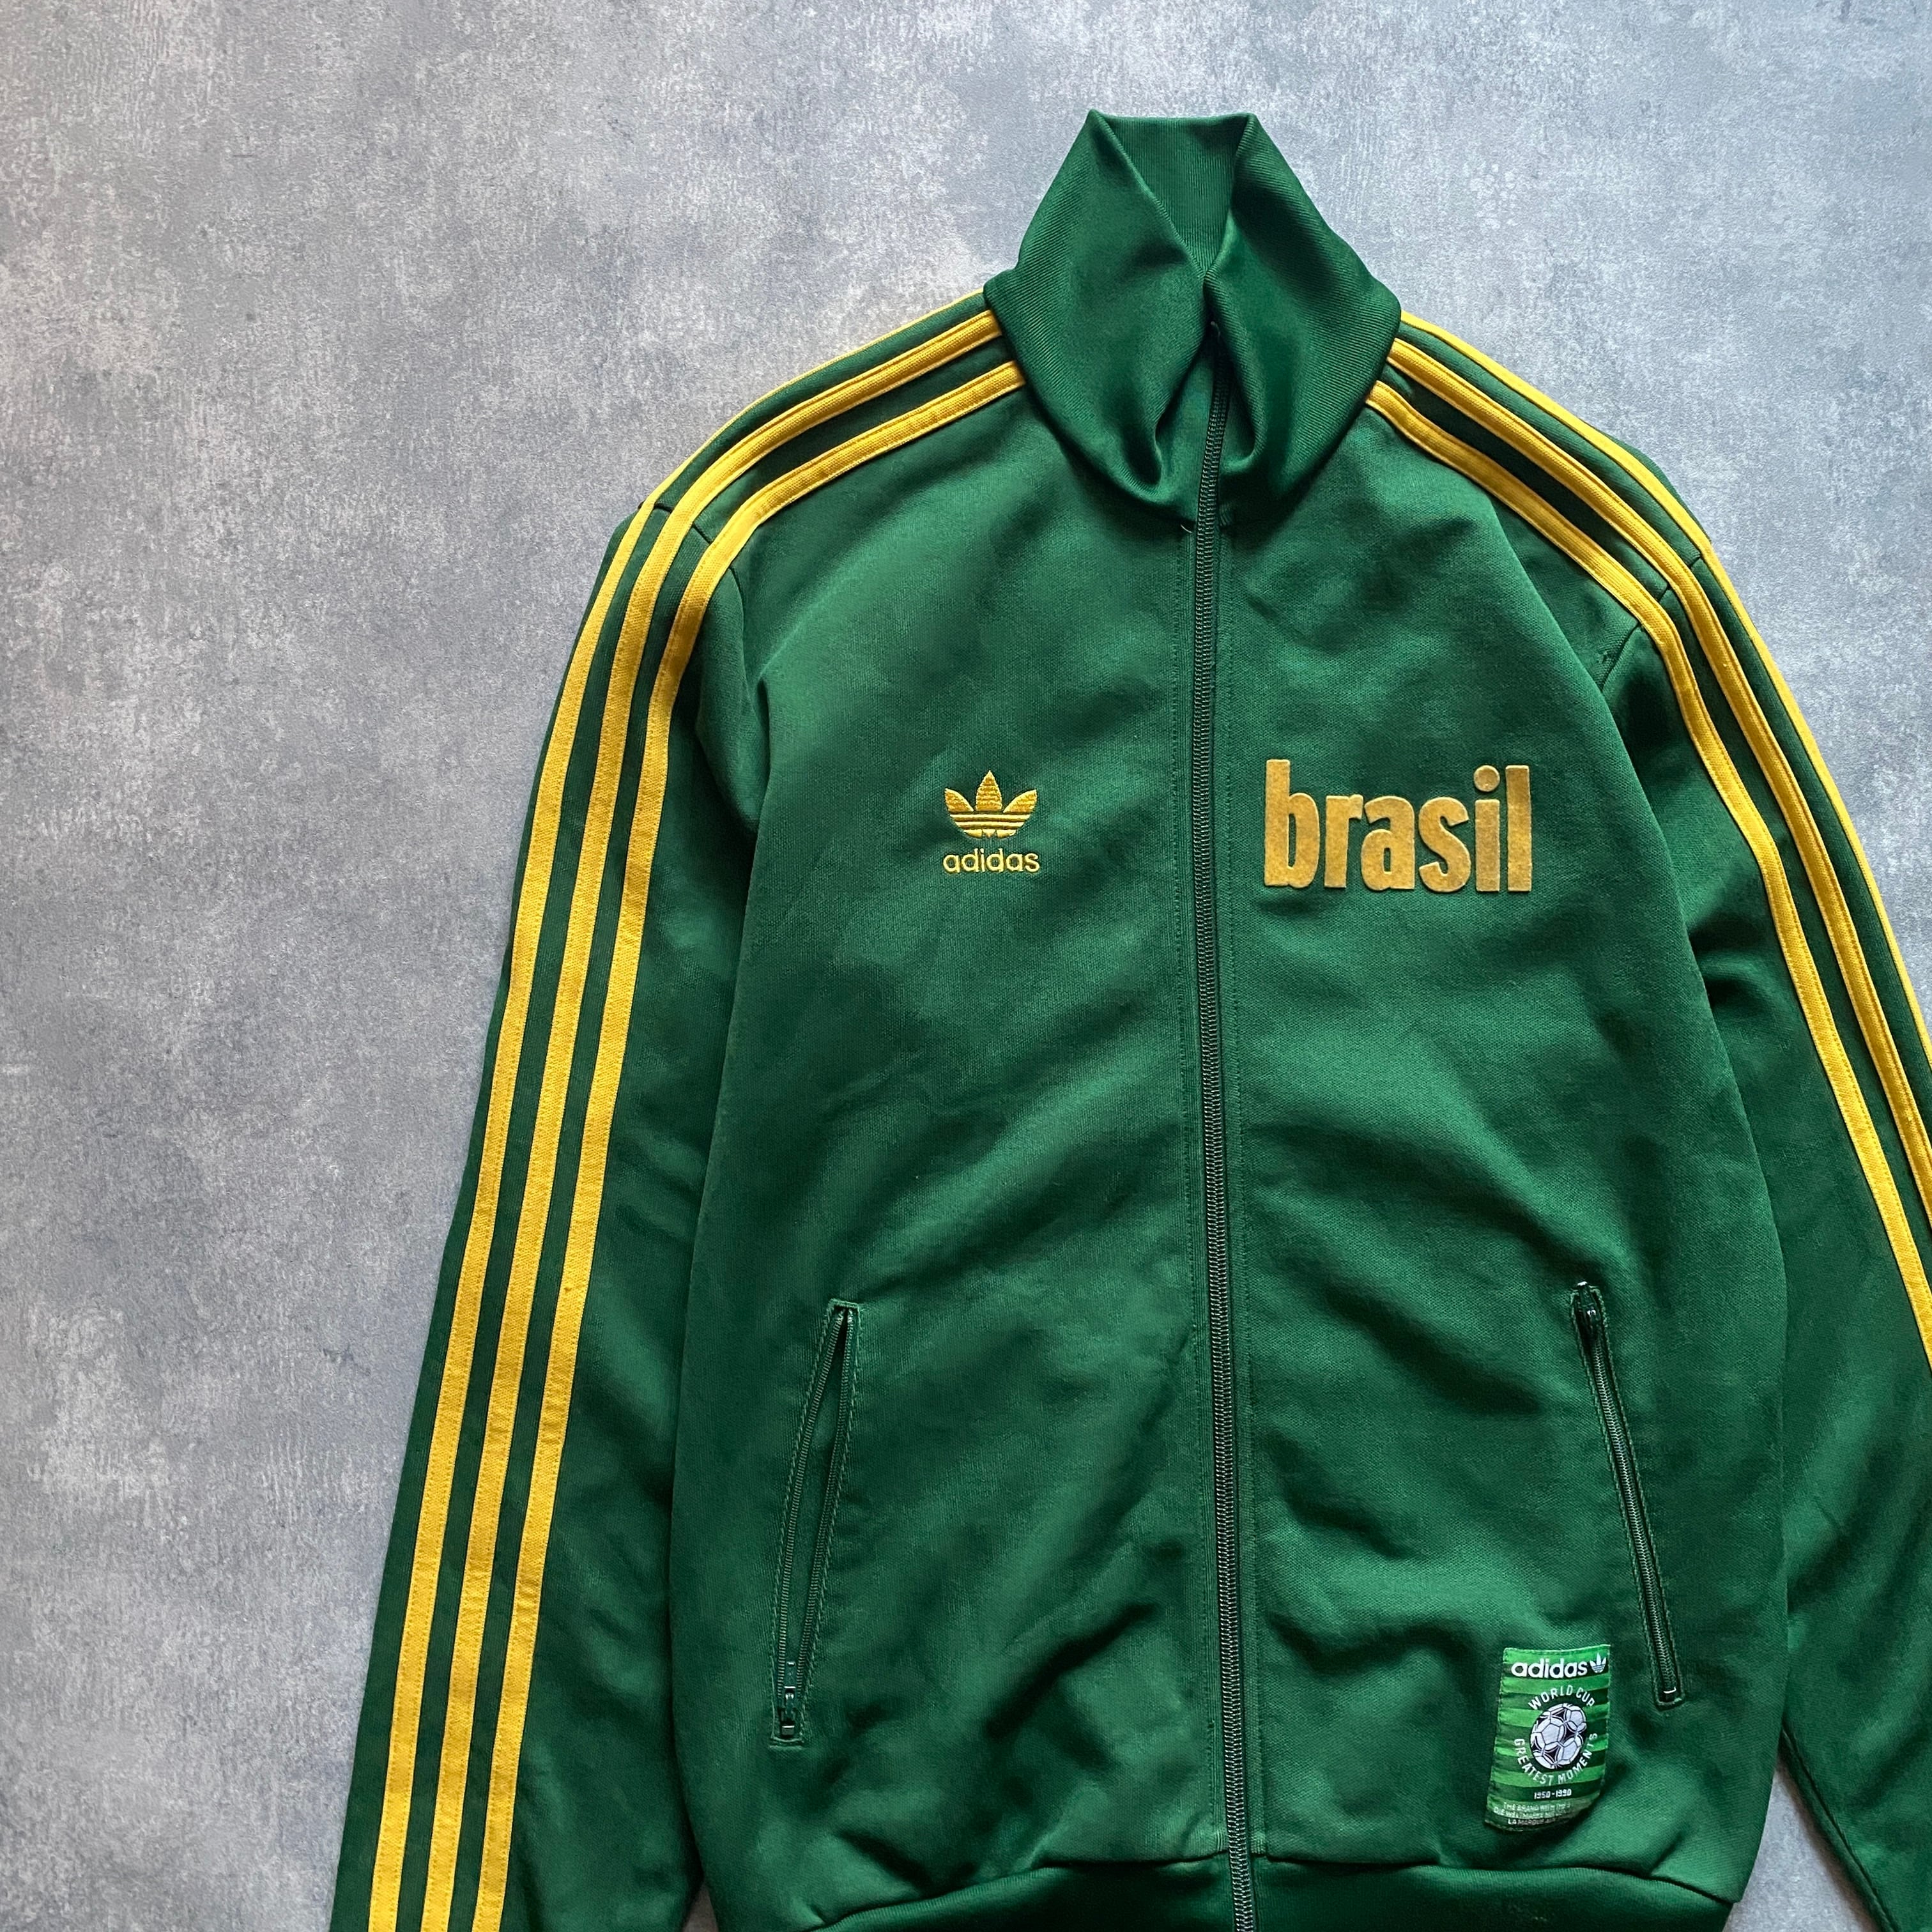 adidas アディダス サッカーブラジル代表デザイン 刺繍バック